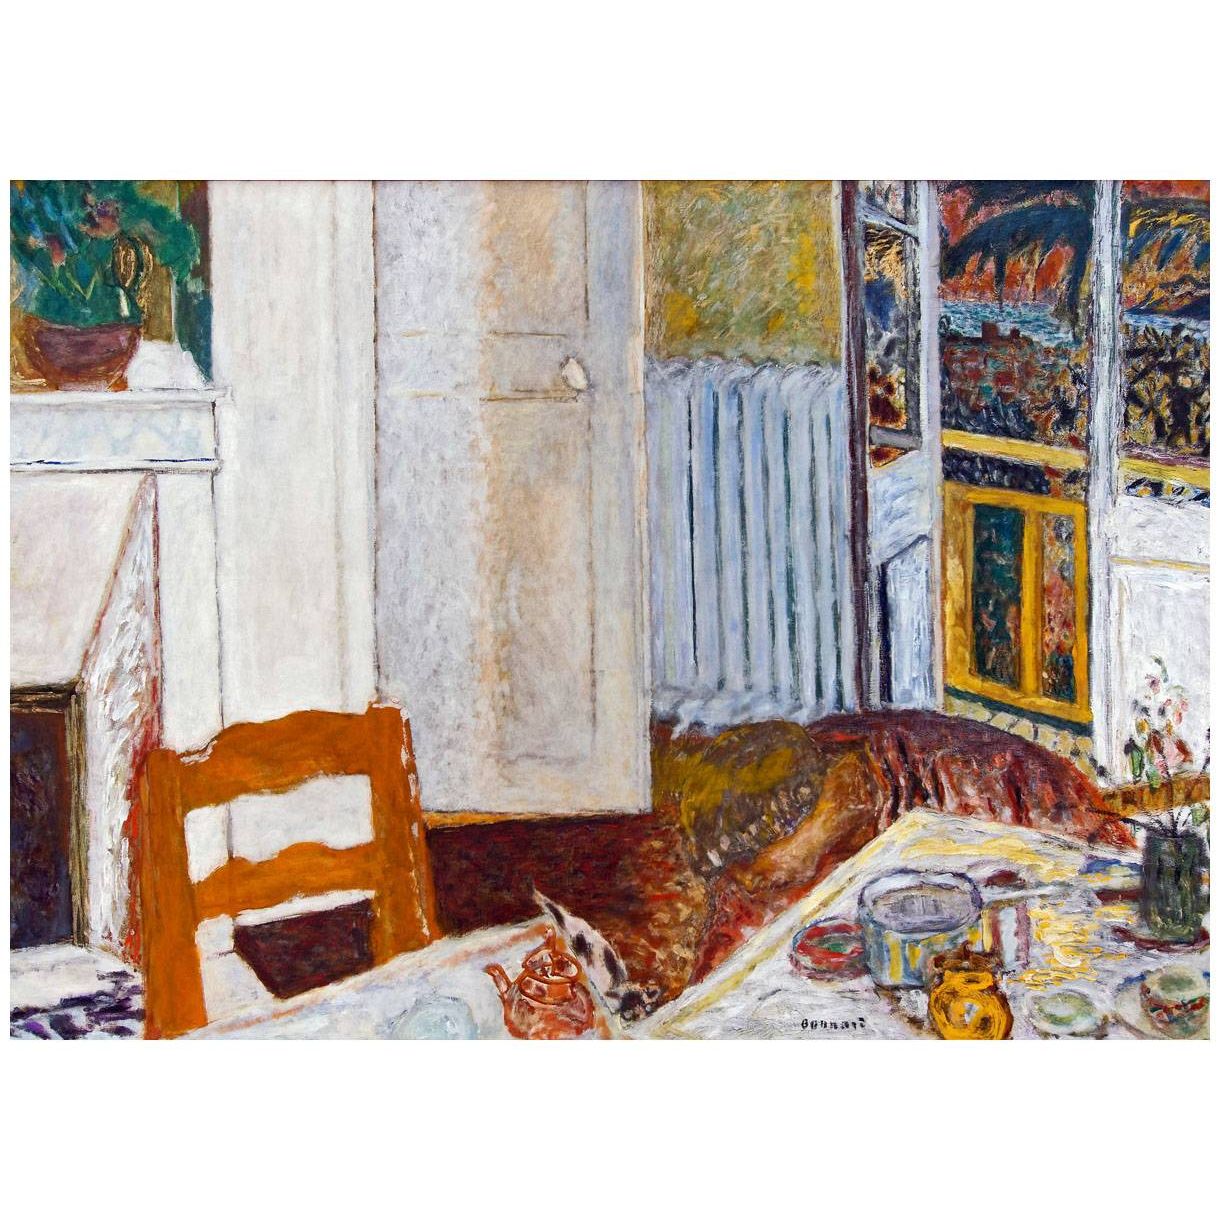 Pierre Bonnard. Interieur blanc. 1932. Musee de Grenoble